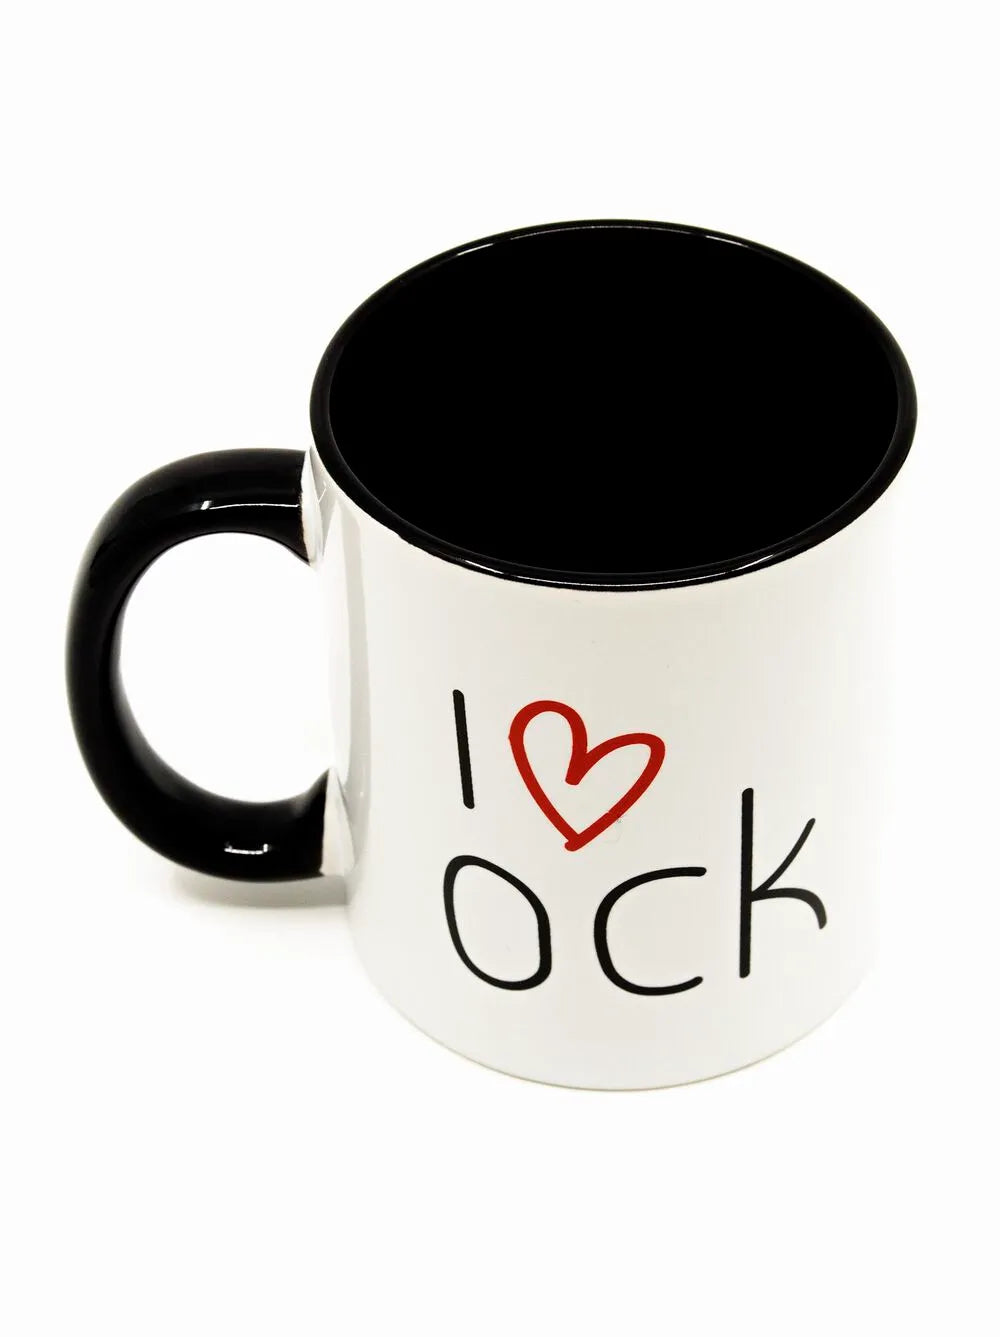 I Love Cock Mug